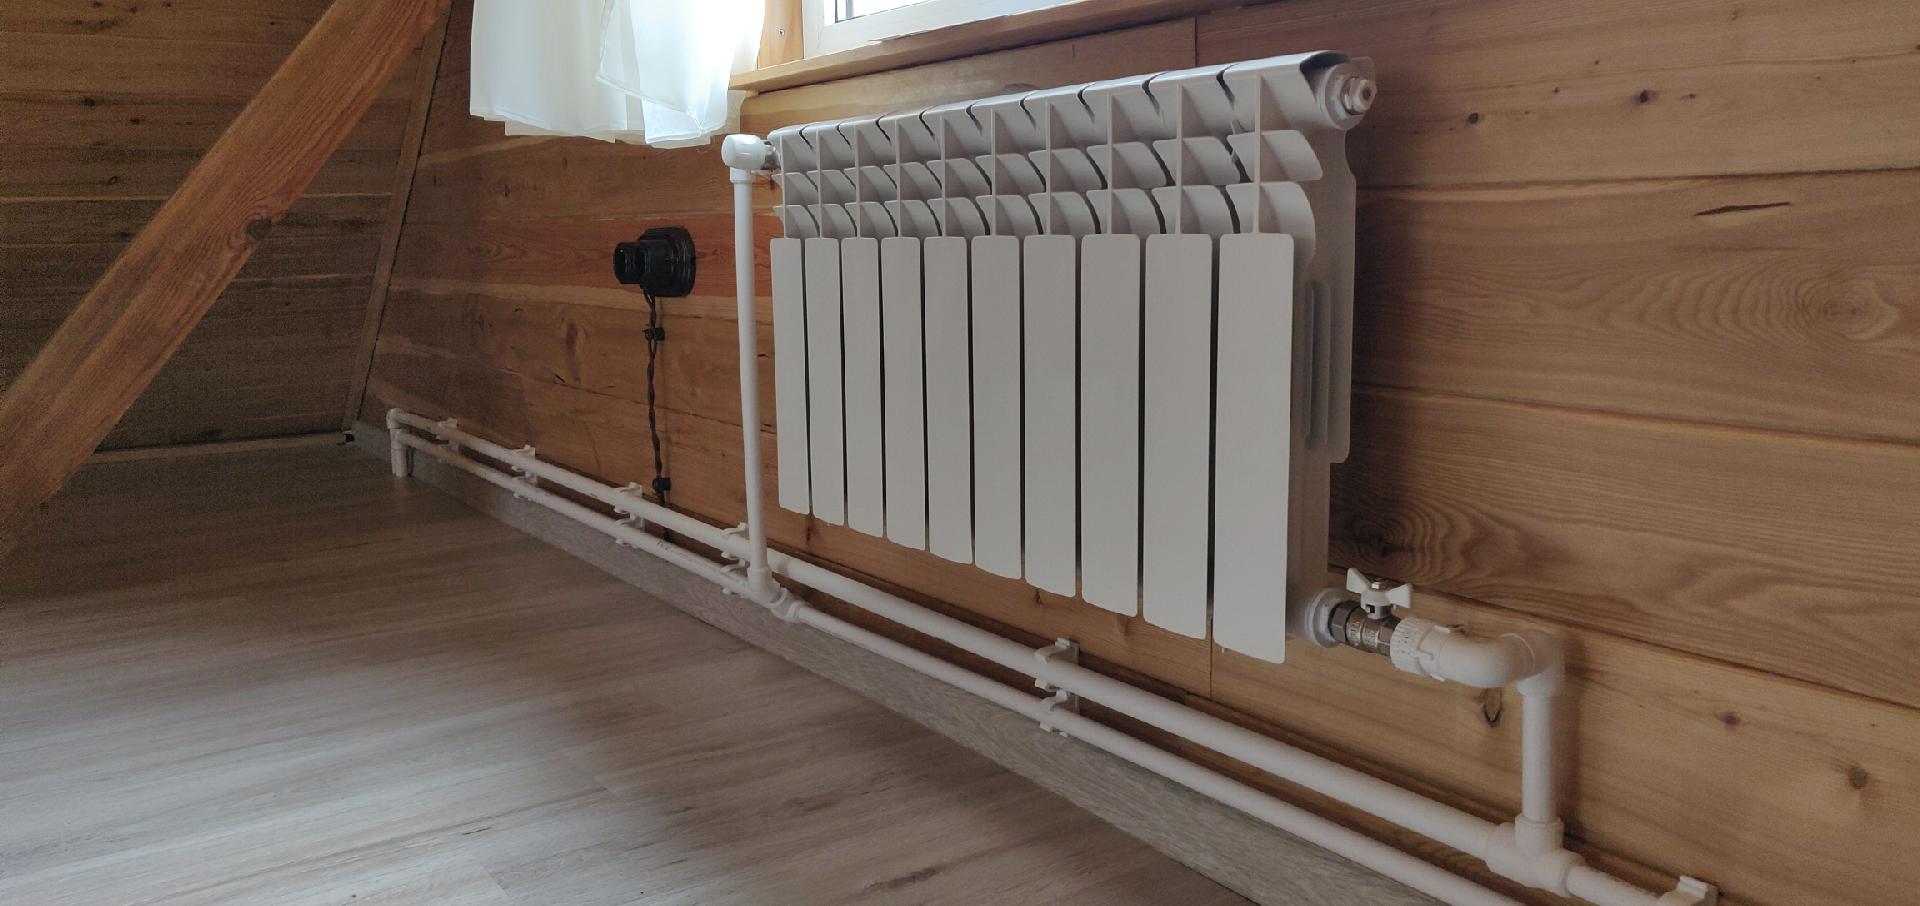 Отопительный сайт. Петля Тихельмана 16 радиаторов. Отопление в доме. Отопление частного дома. Батареи отопления в частном доме.